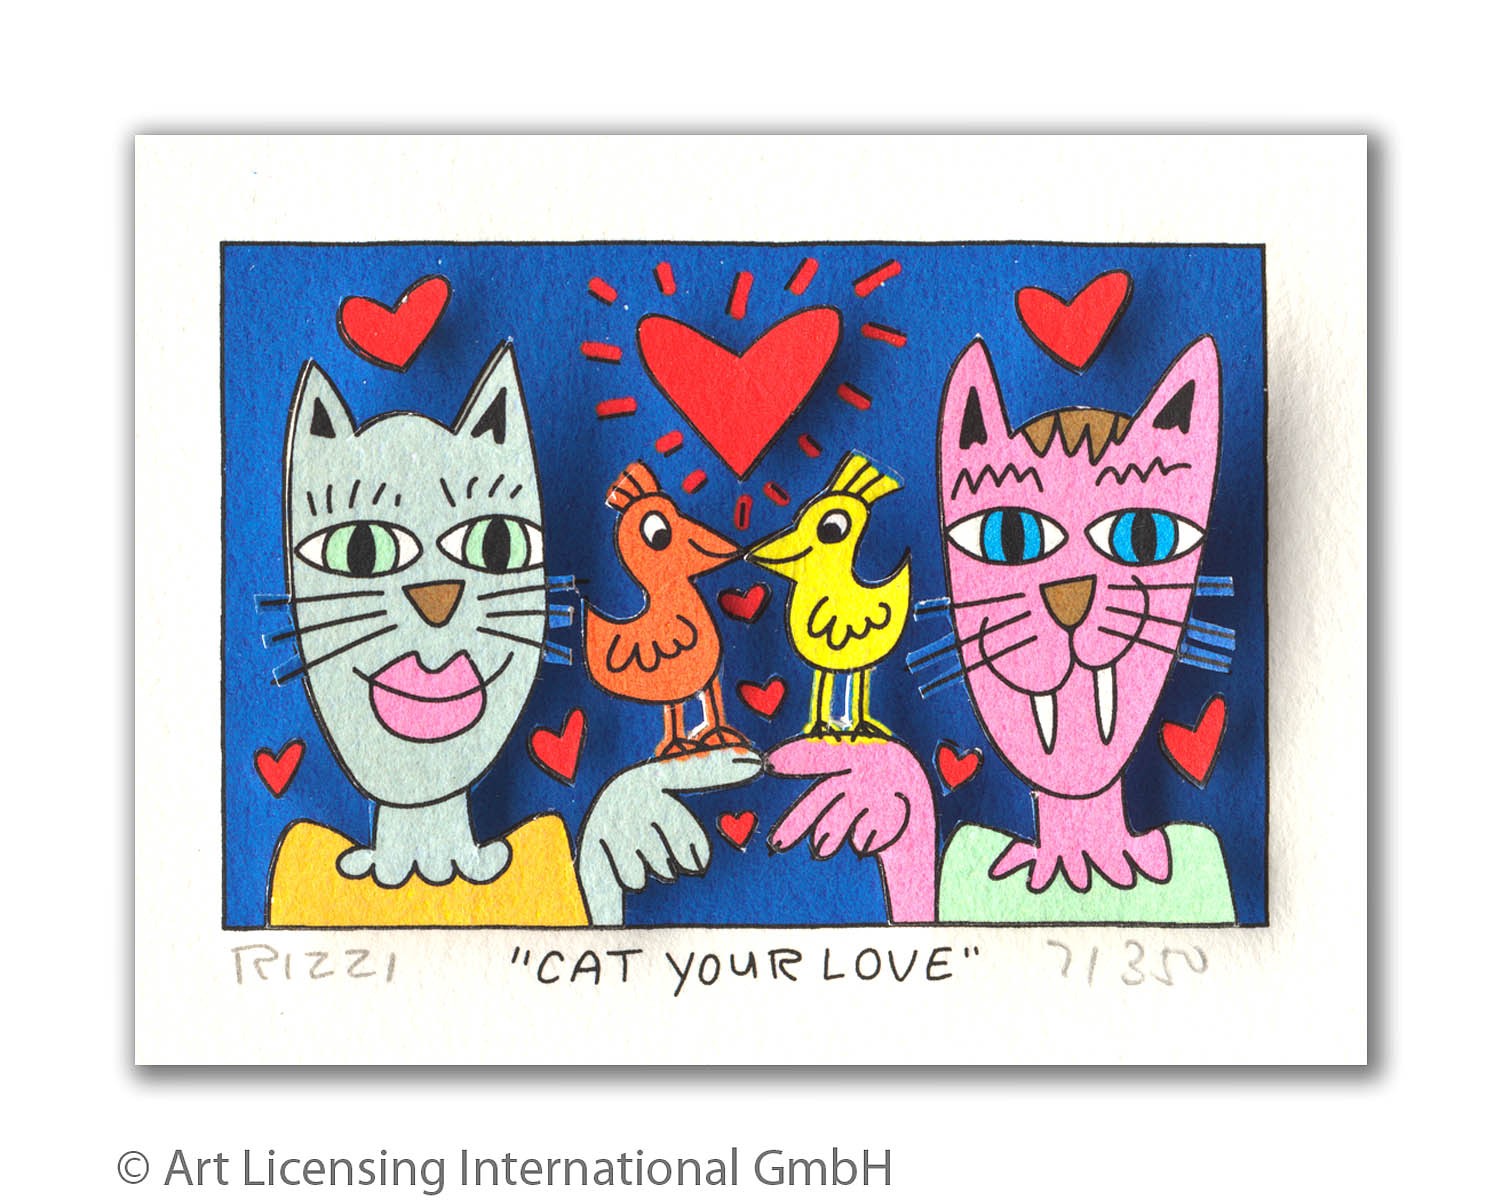 james-rizzi-cat-your-love-ungerahmt-kunst-3d